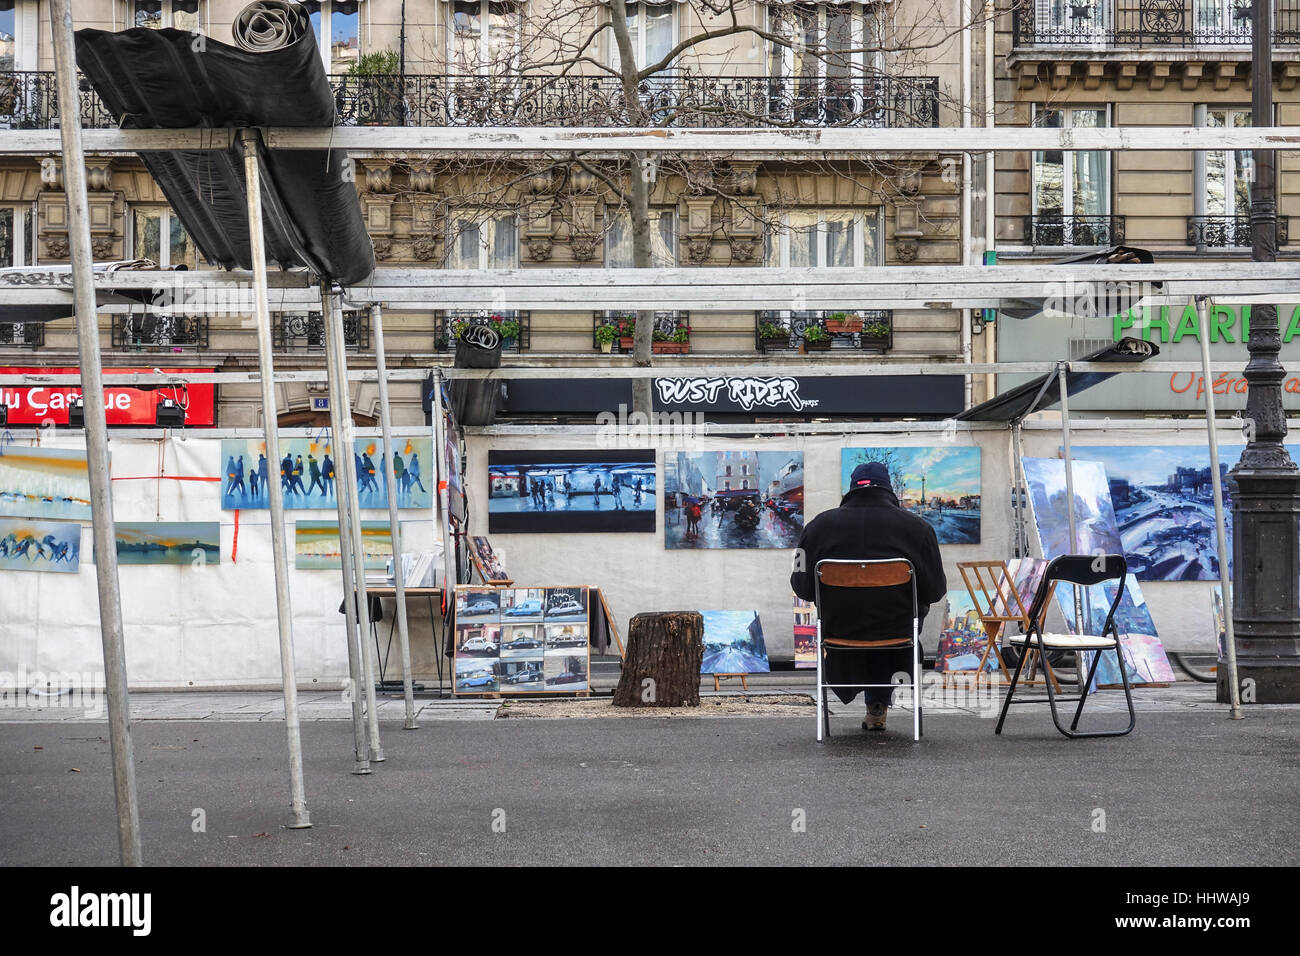 Vendeur d'Art Vente de tableaux assis devant son échoppe, Paris. Bastille, France. Banque D'Images